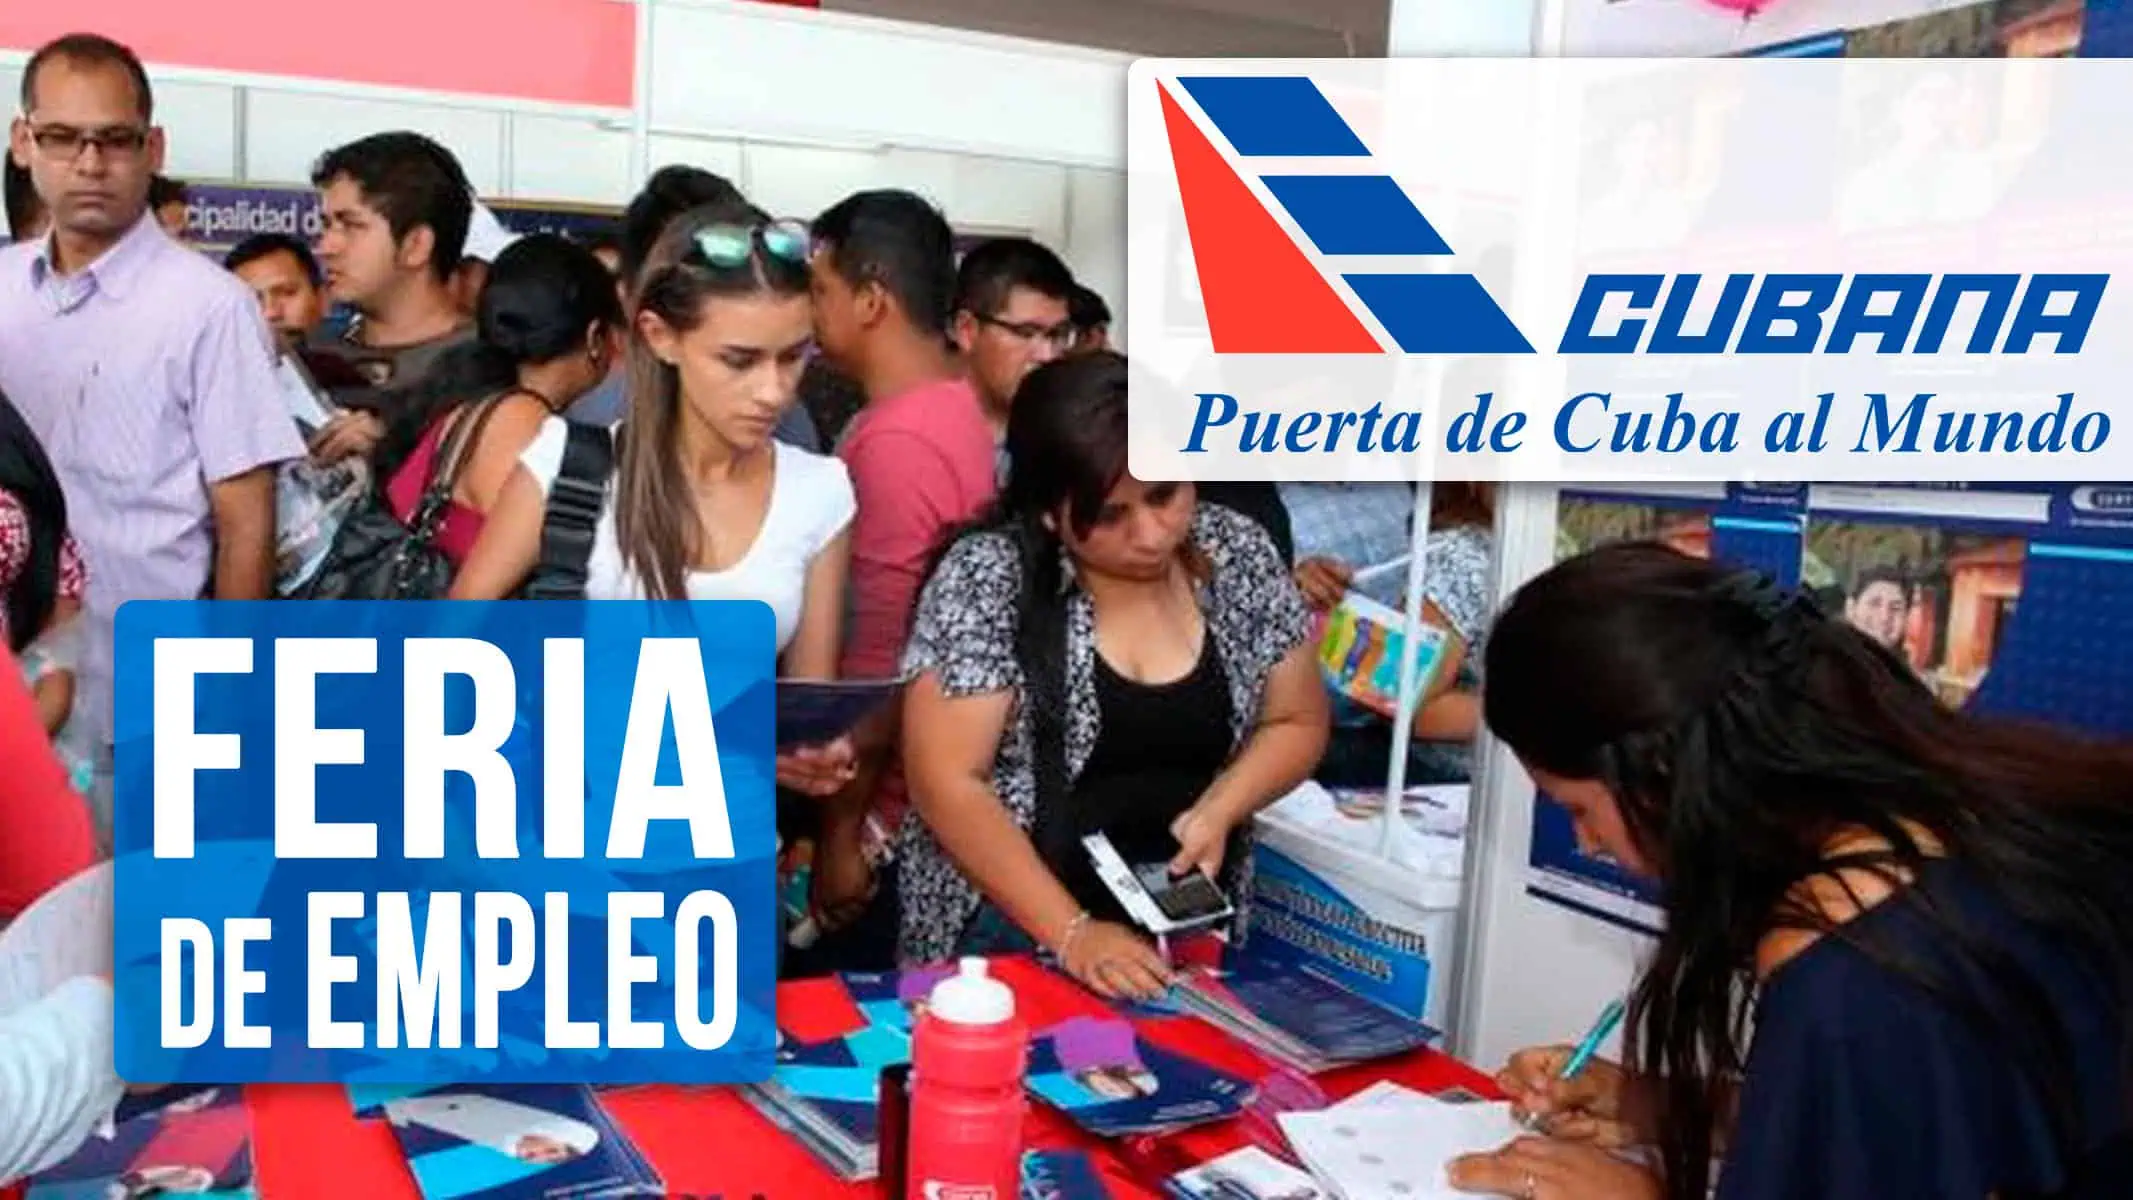 Corporación de la Aviación Cubana Convoca a Feria de Empleo